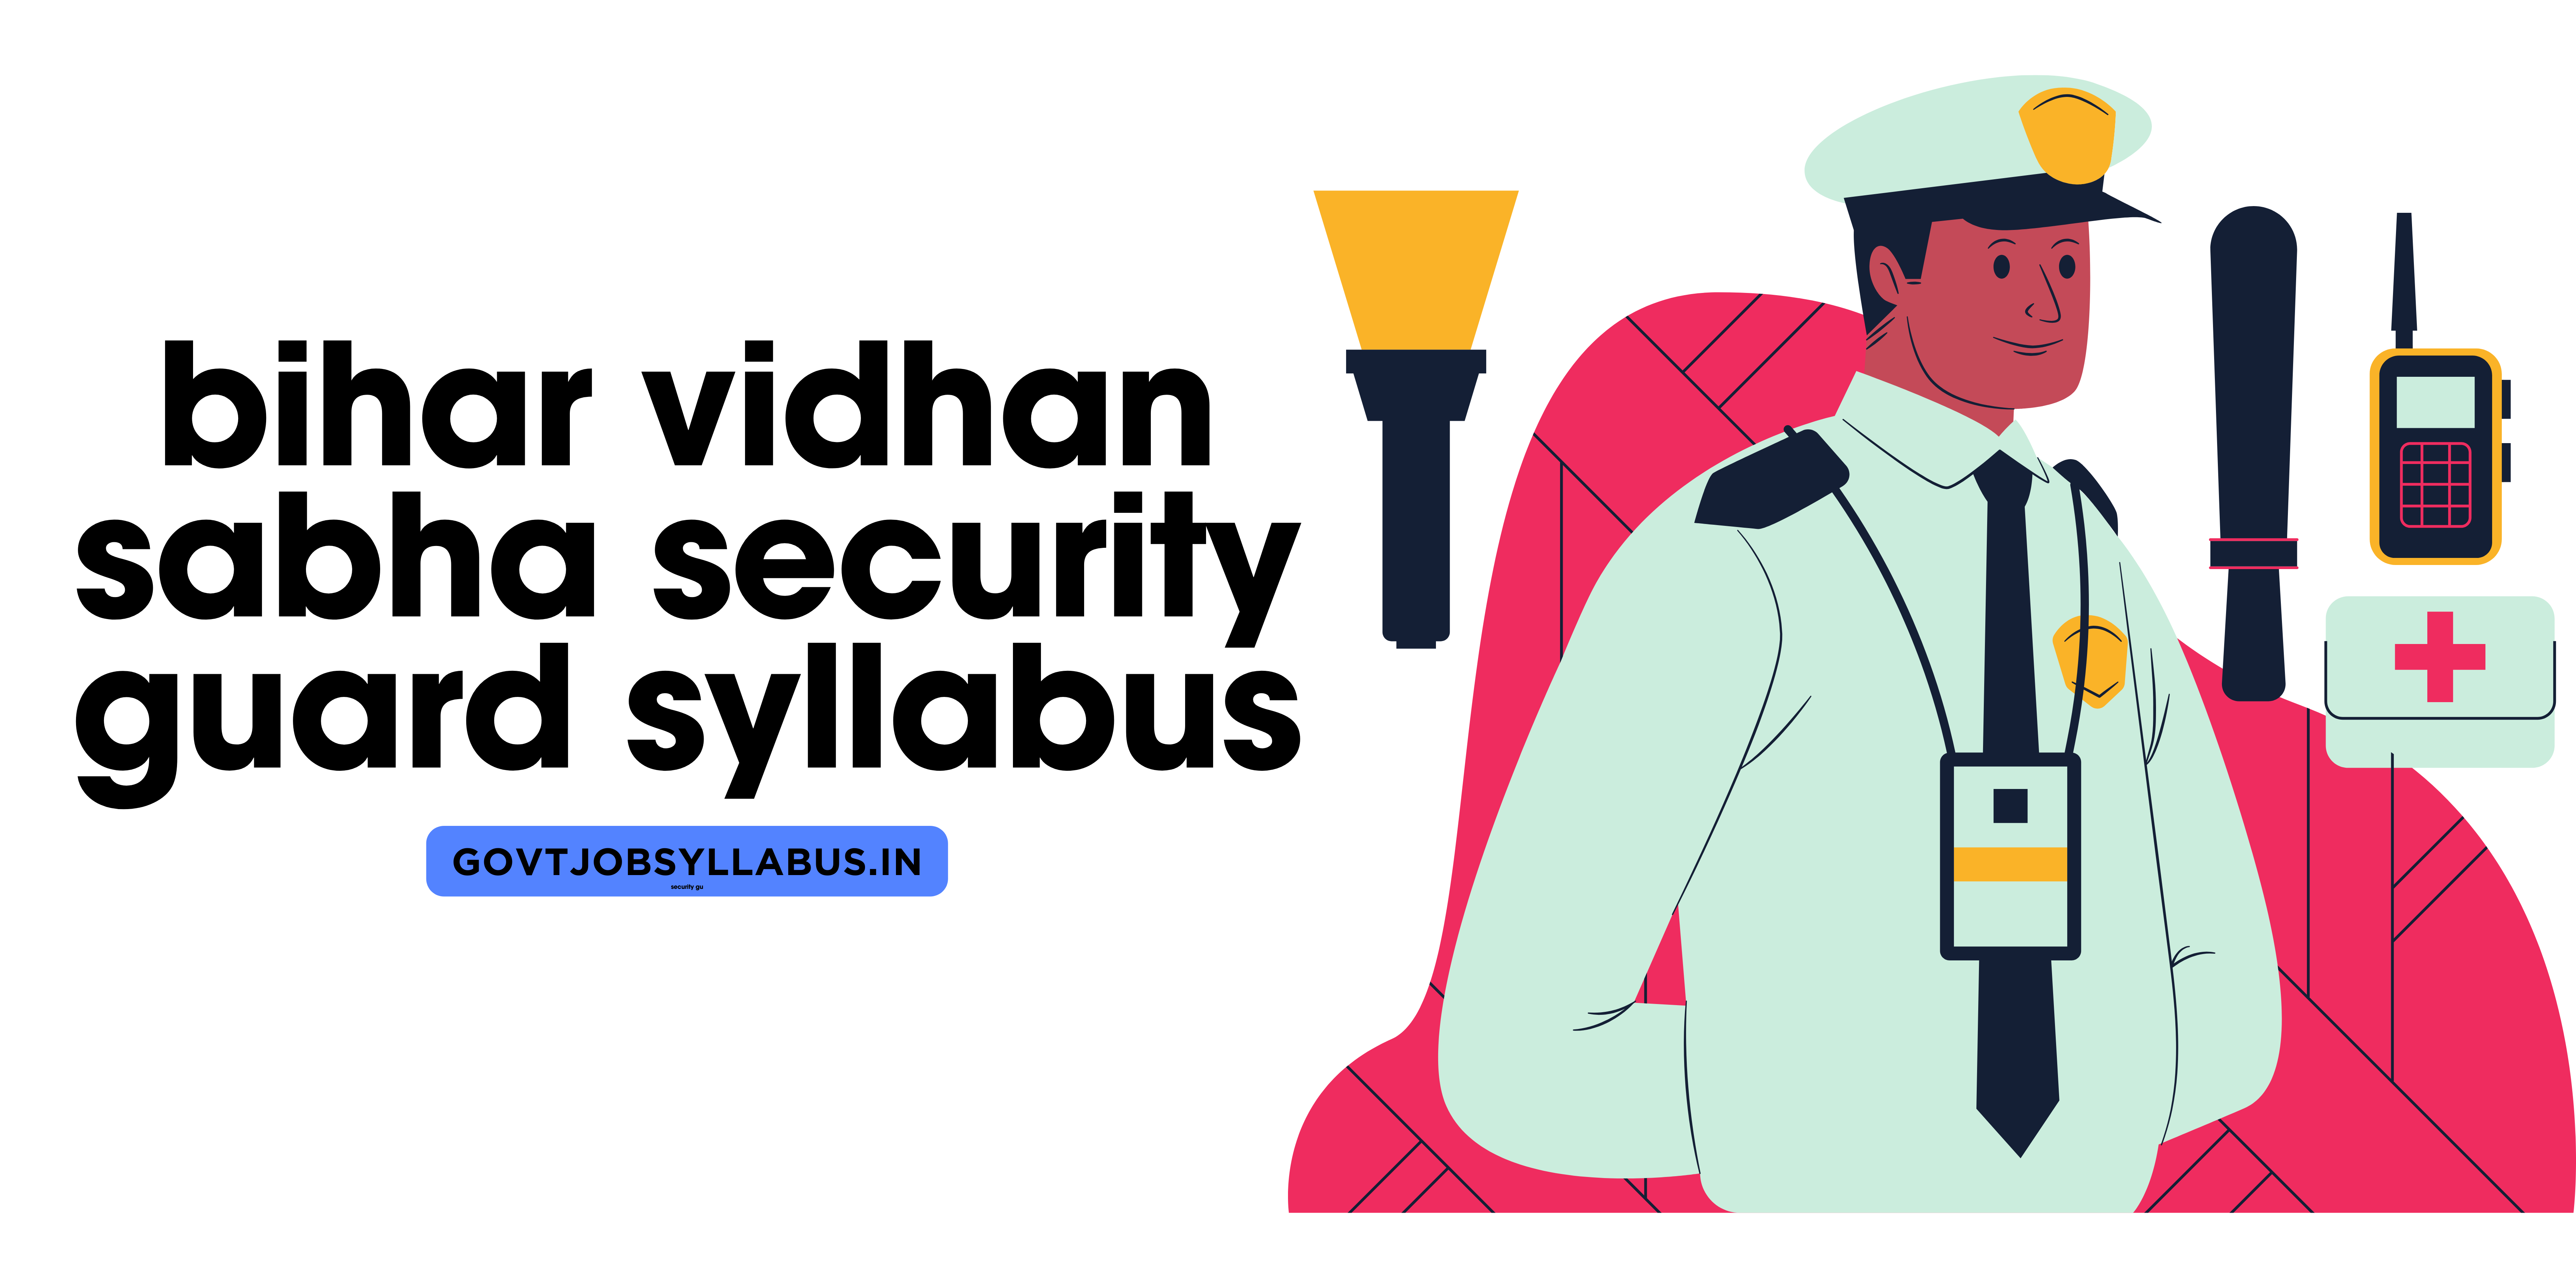 Bihar Vidhan Sabha Security Guard Syllabus